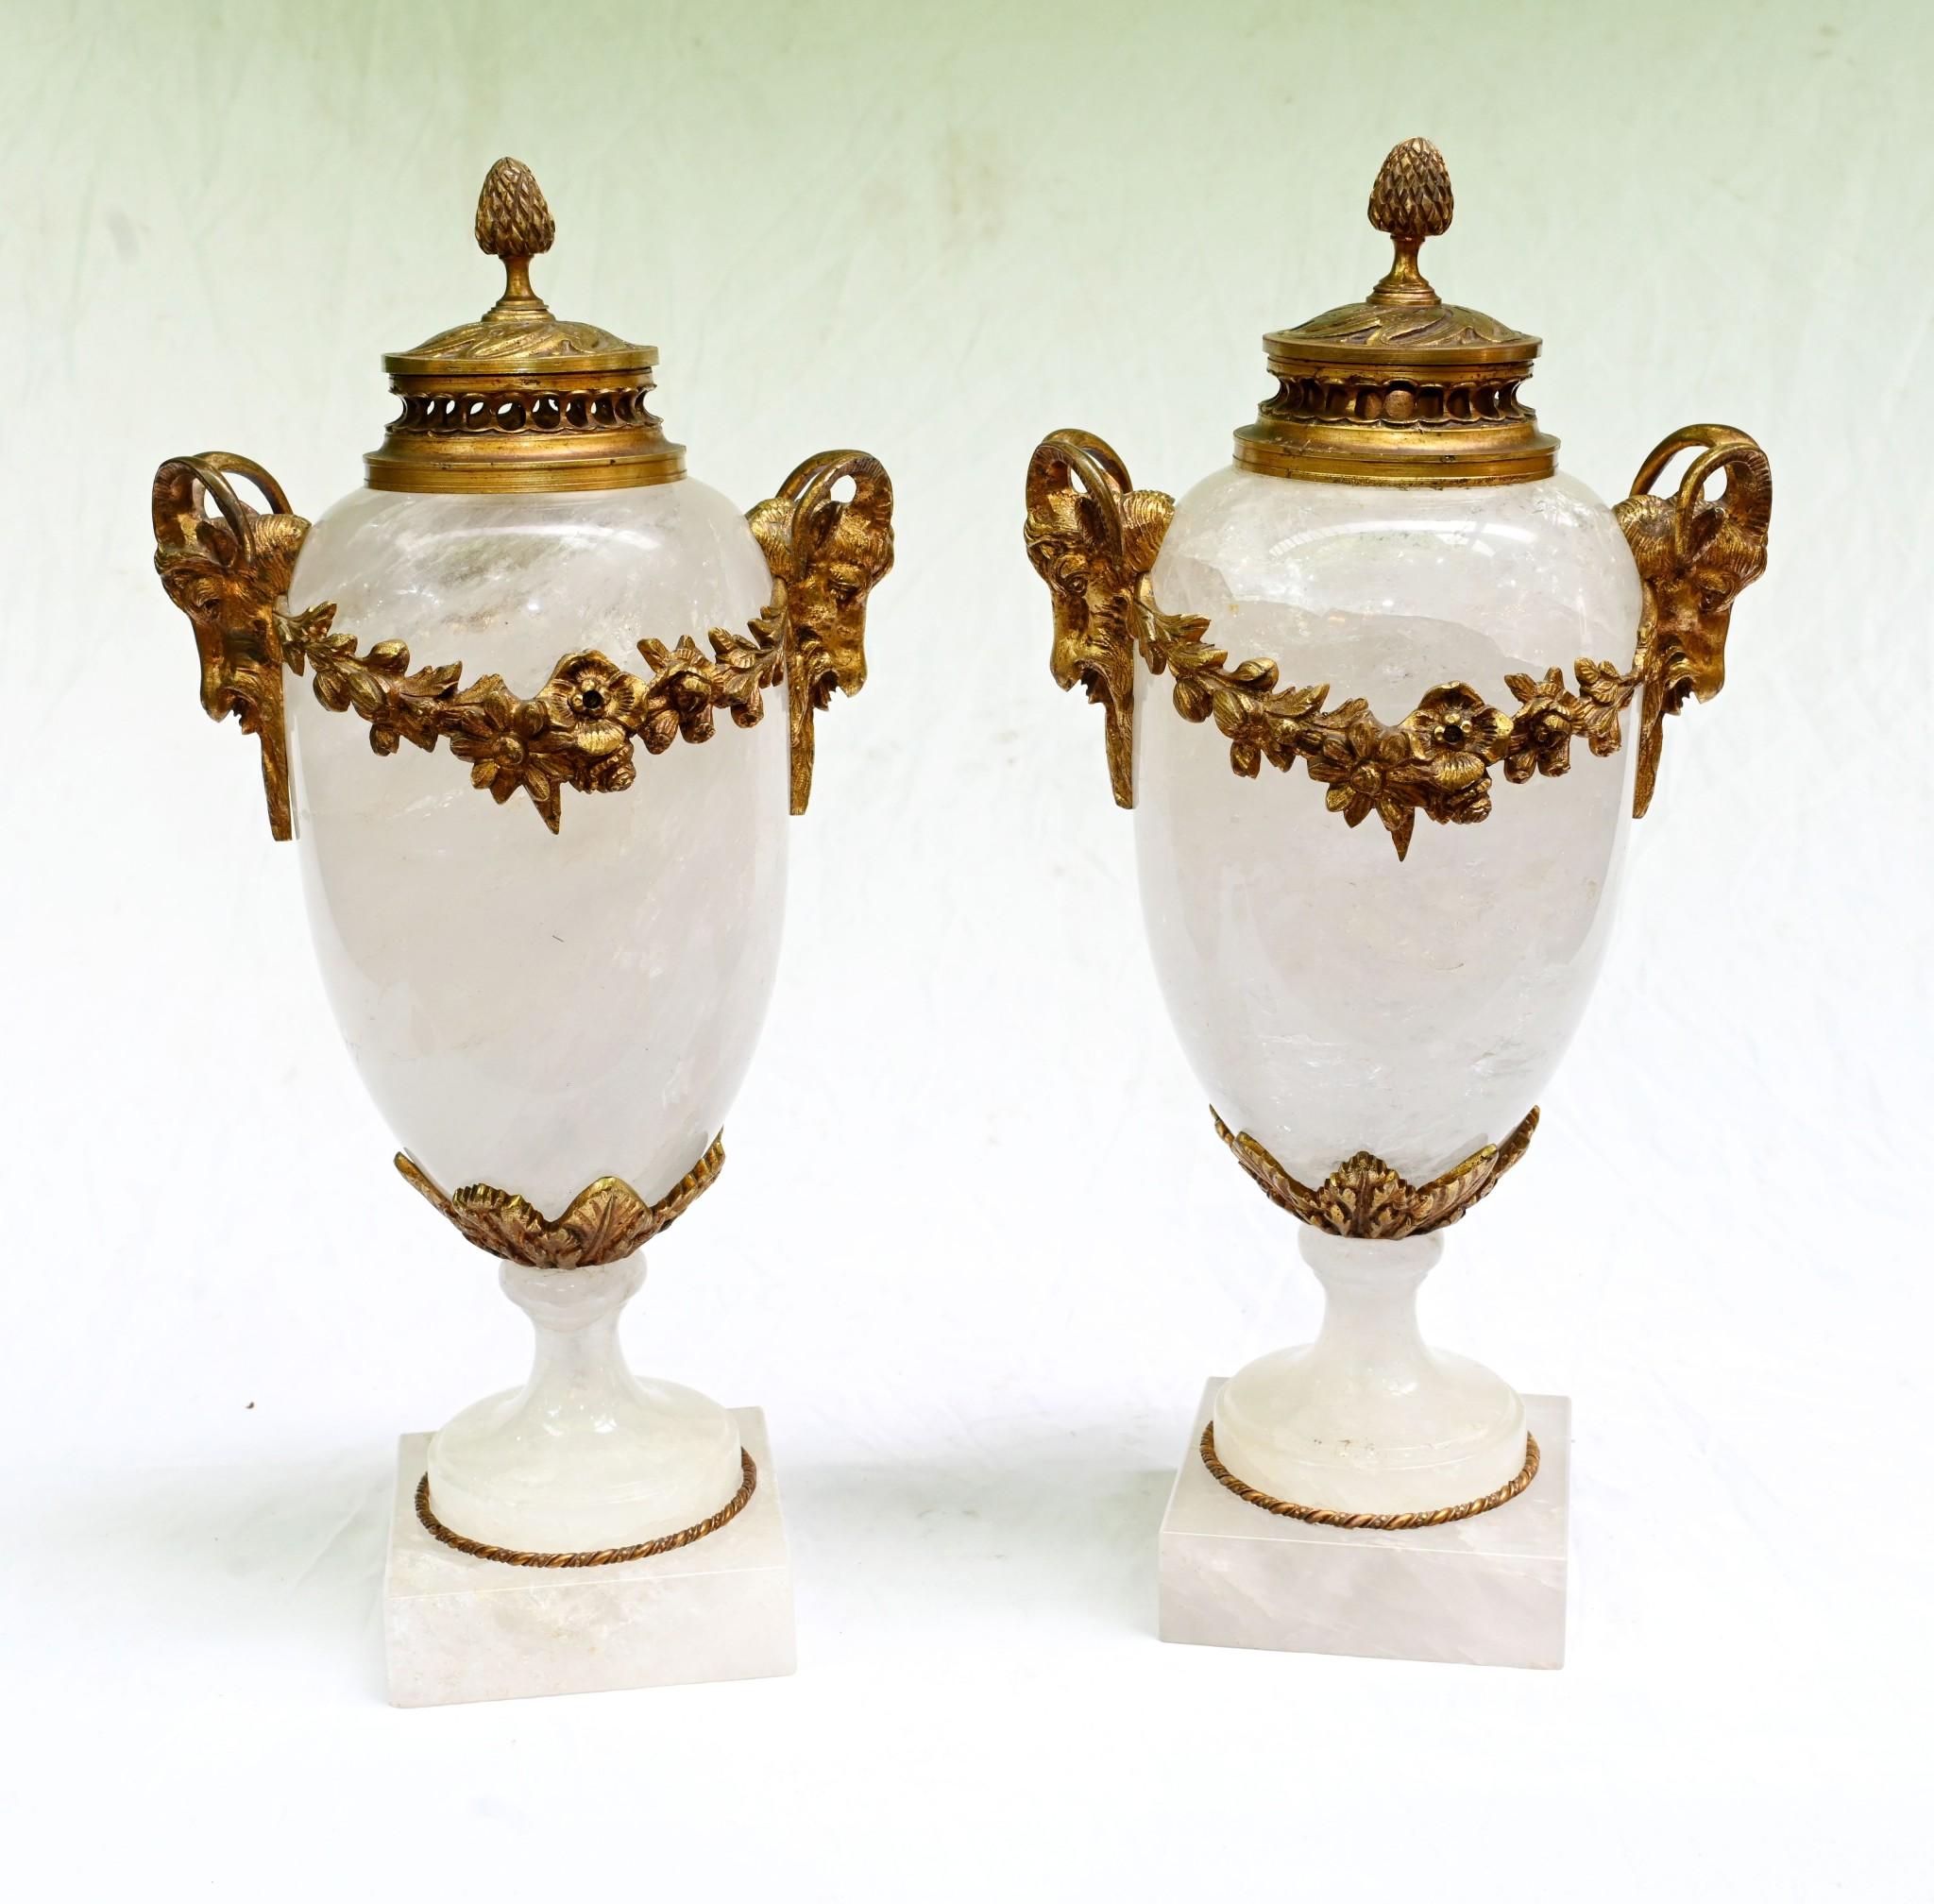 Wunderschönes Paar französischer Cassolette-Urnen, gefertigt aus feinstem Bergkristall
Die Form A der Amphora sticht besonders durch das Farbspiel zwischen Bergkristall und Vergoldung hervor.
Zu den vergoldeten Beschlägen gehören Griffe mit